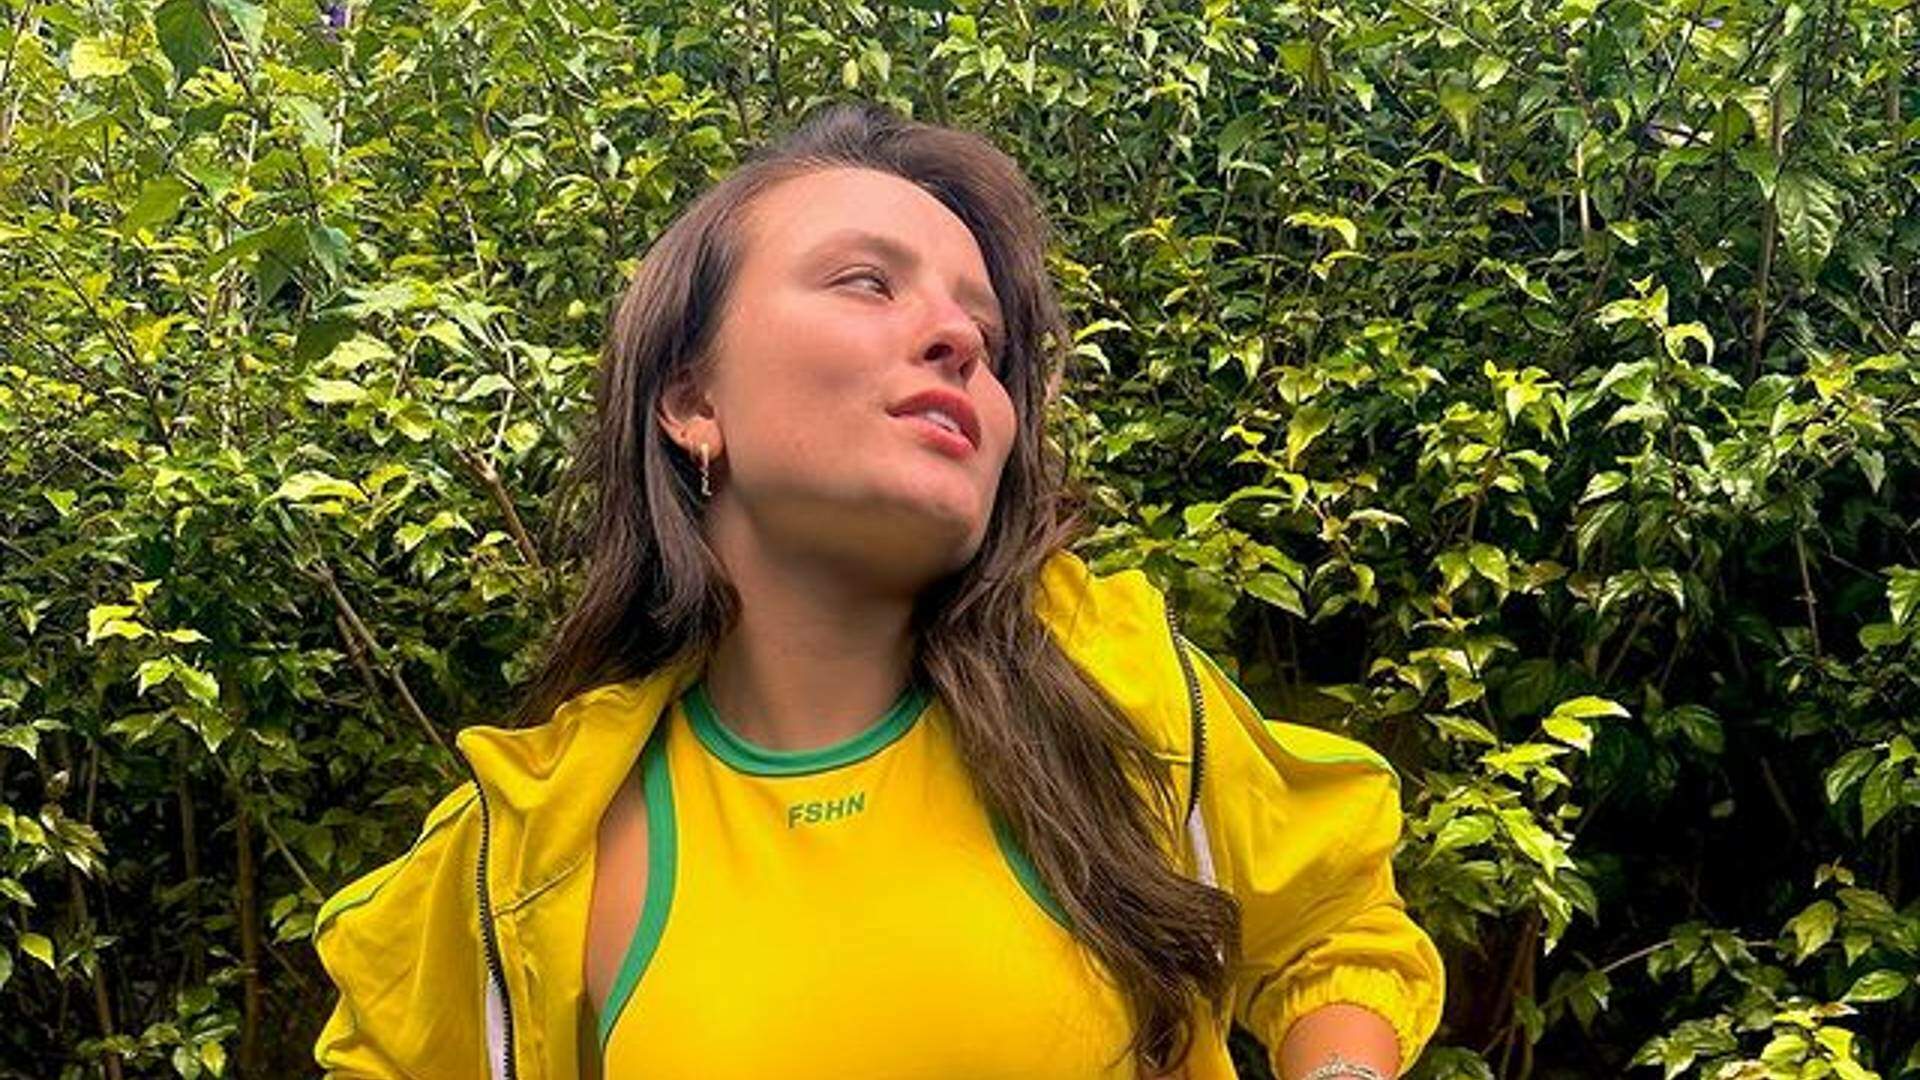 Larissa Manoela rebola funk com vestido PP e não percebe que bumbum está saindo: “Bem sensual” - Metropolitana FM